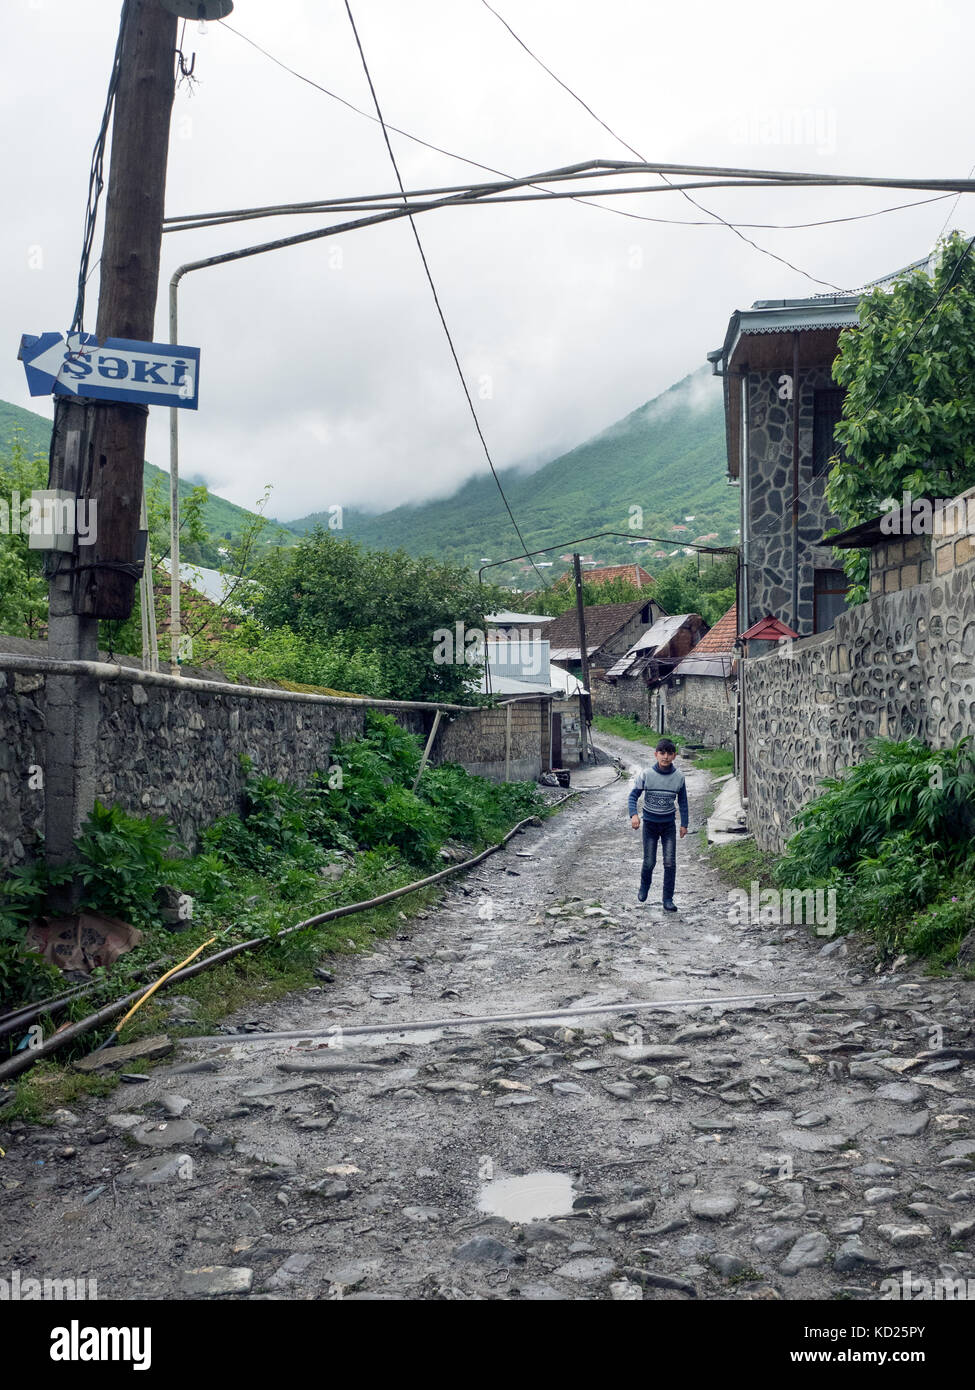 Ragazzo waliking in una strada di Kish, un insediamento rurale nel distretto di sheki, nord Azerbaigian Foto Stock